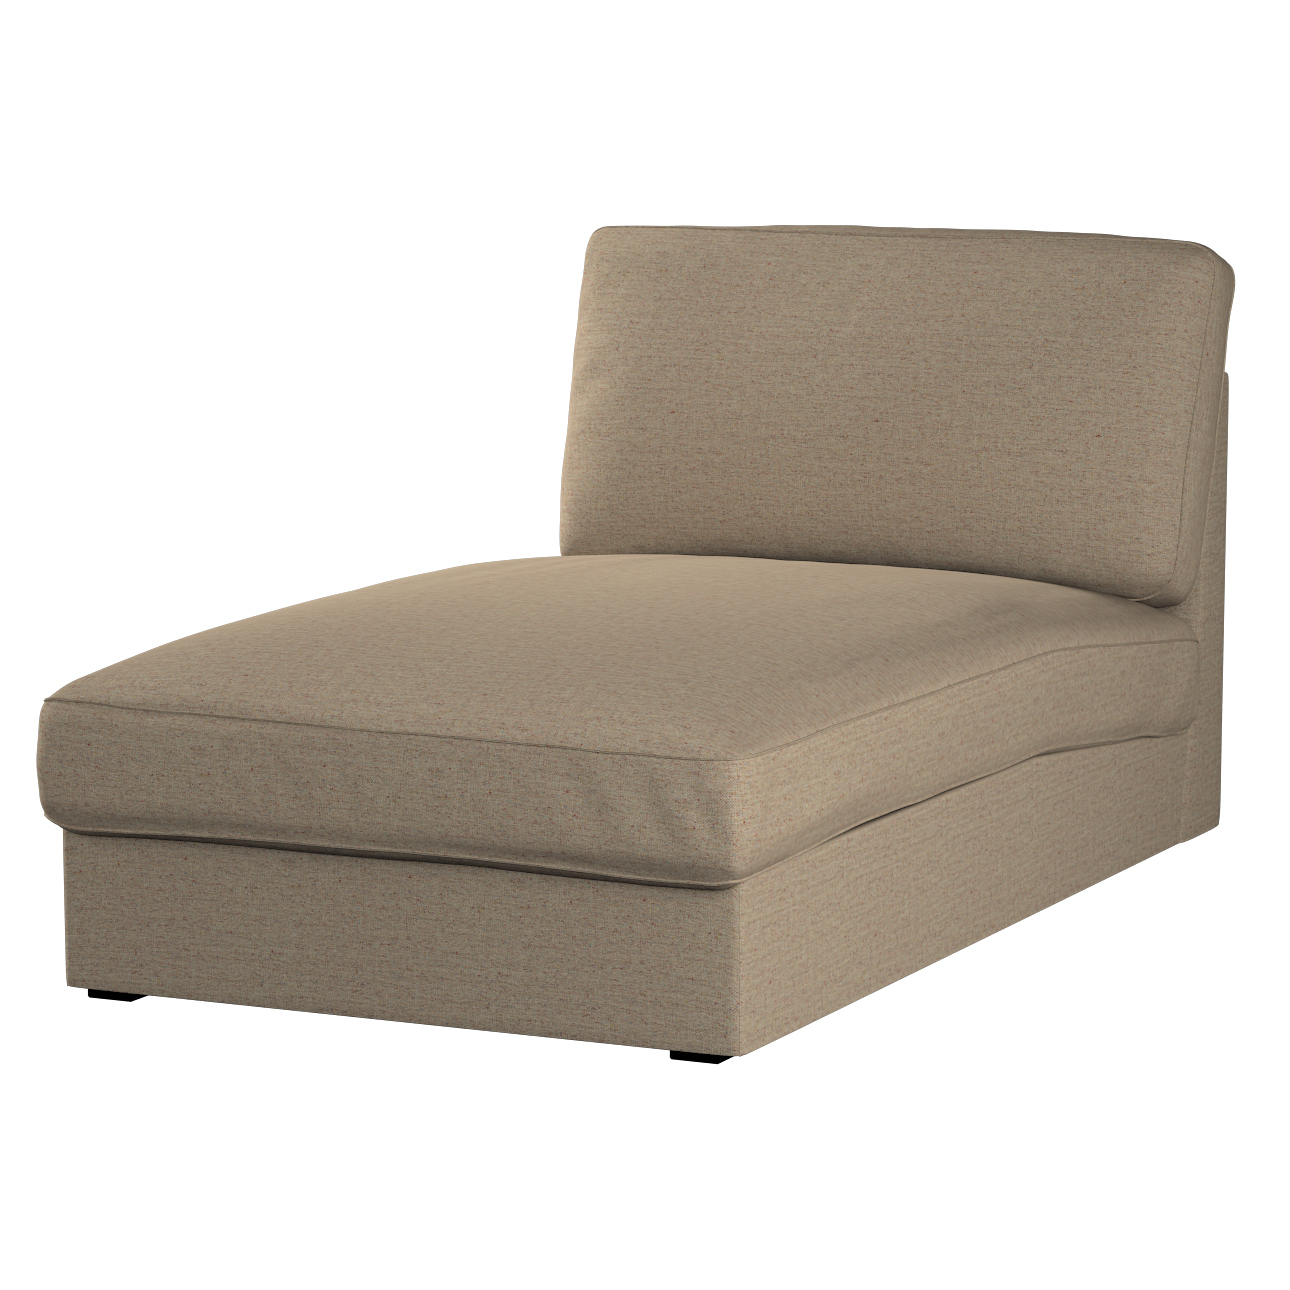 Bezug für Kivik Recamiere Sofa, beige, Bezug für Kivik Recamiere, Madrid (1 günstig online kaufen